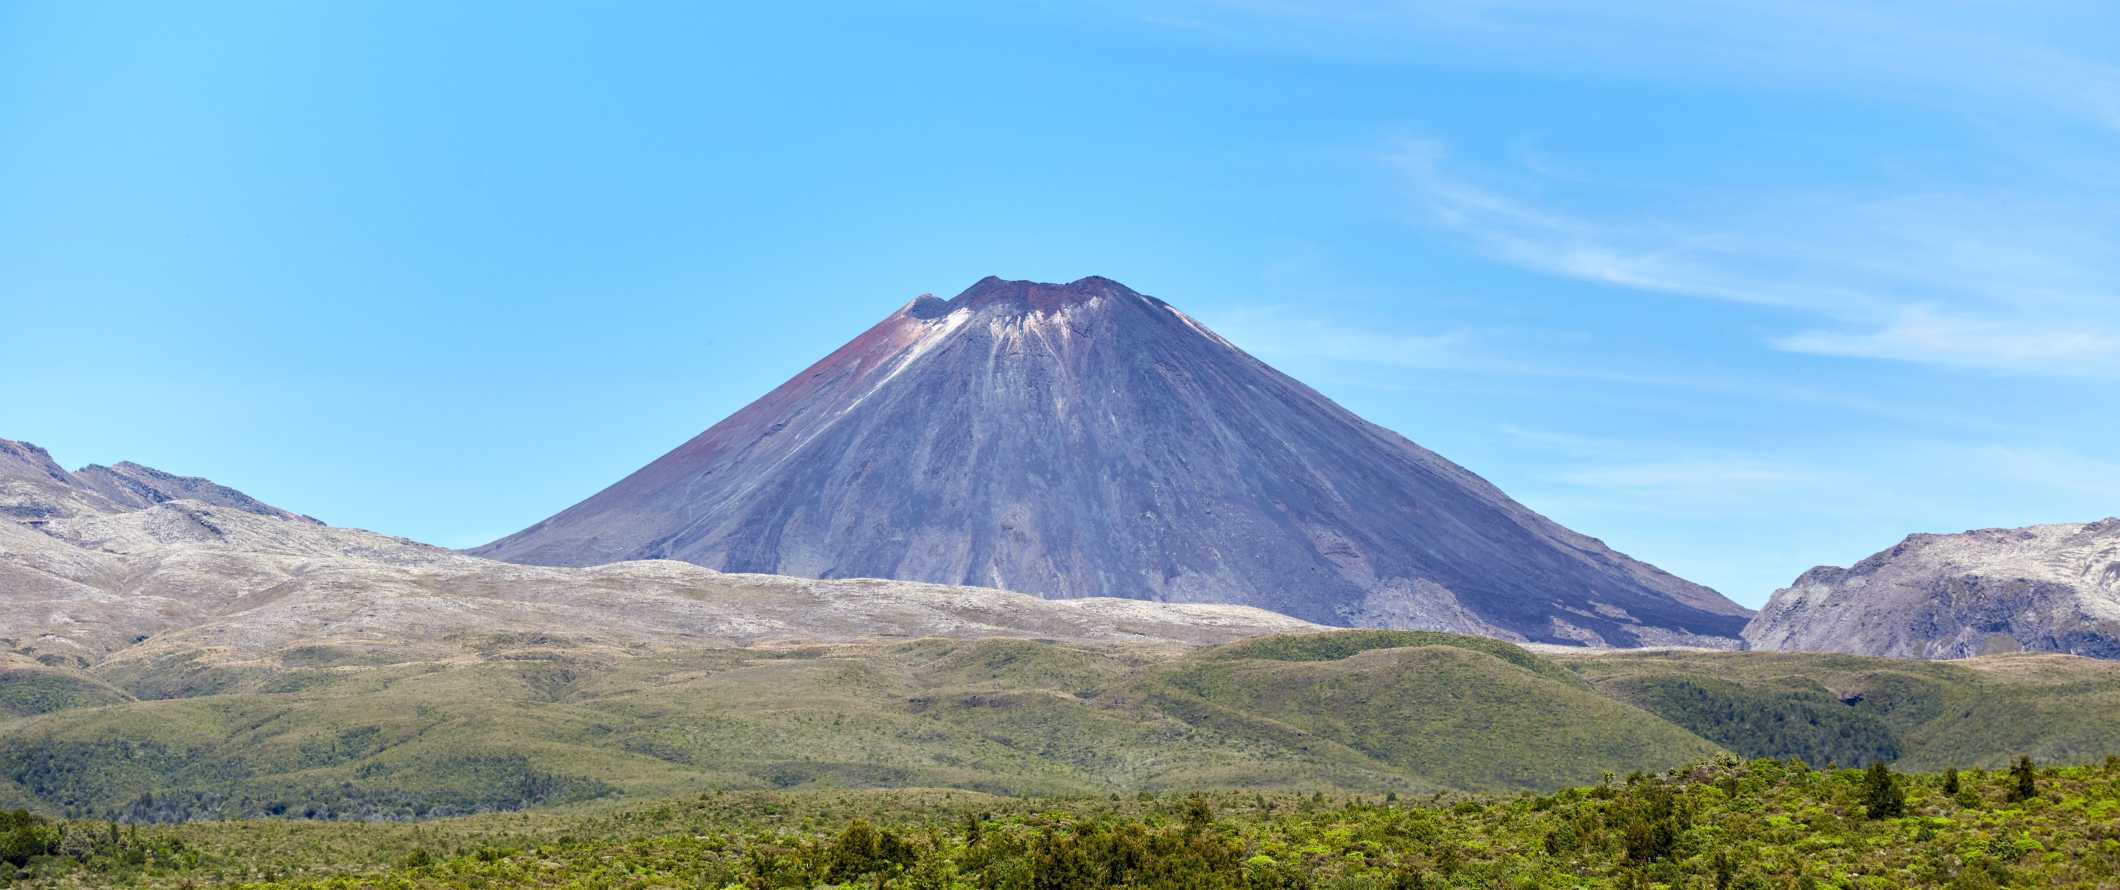 Monte Tauhara, um vulcão adormecido, não muito longe de Taupo, Nova Zelândia.